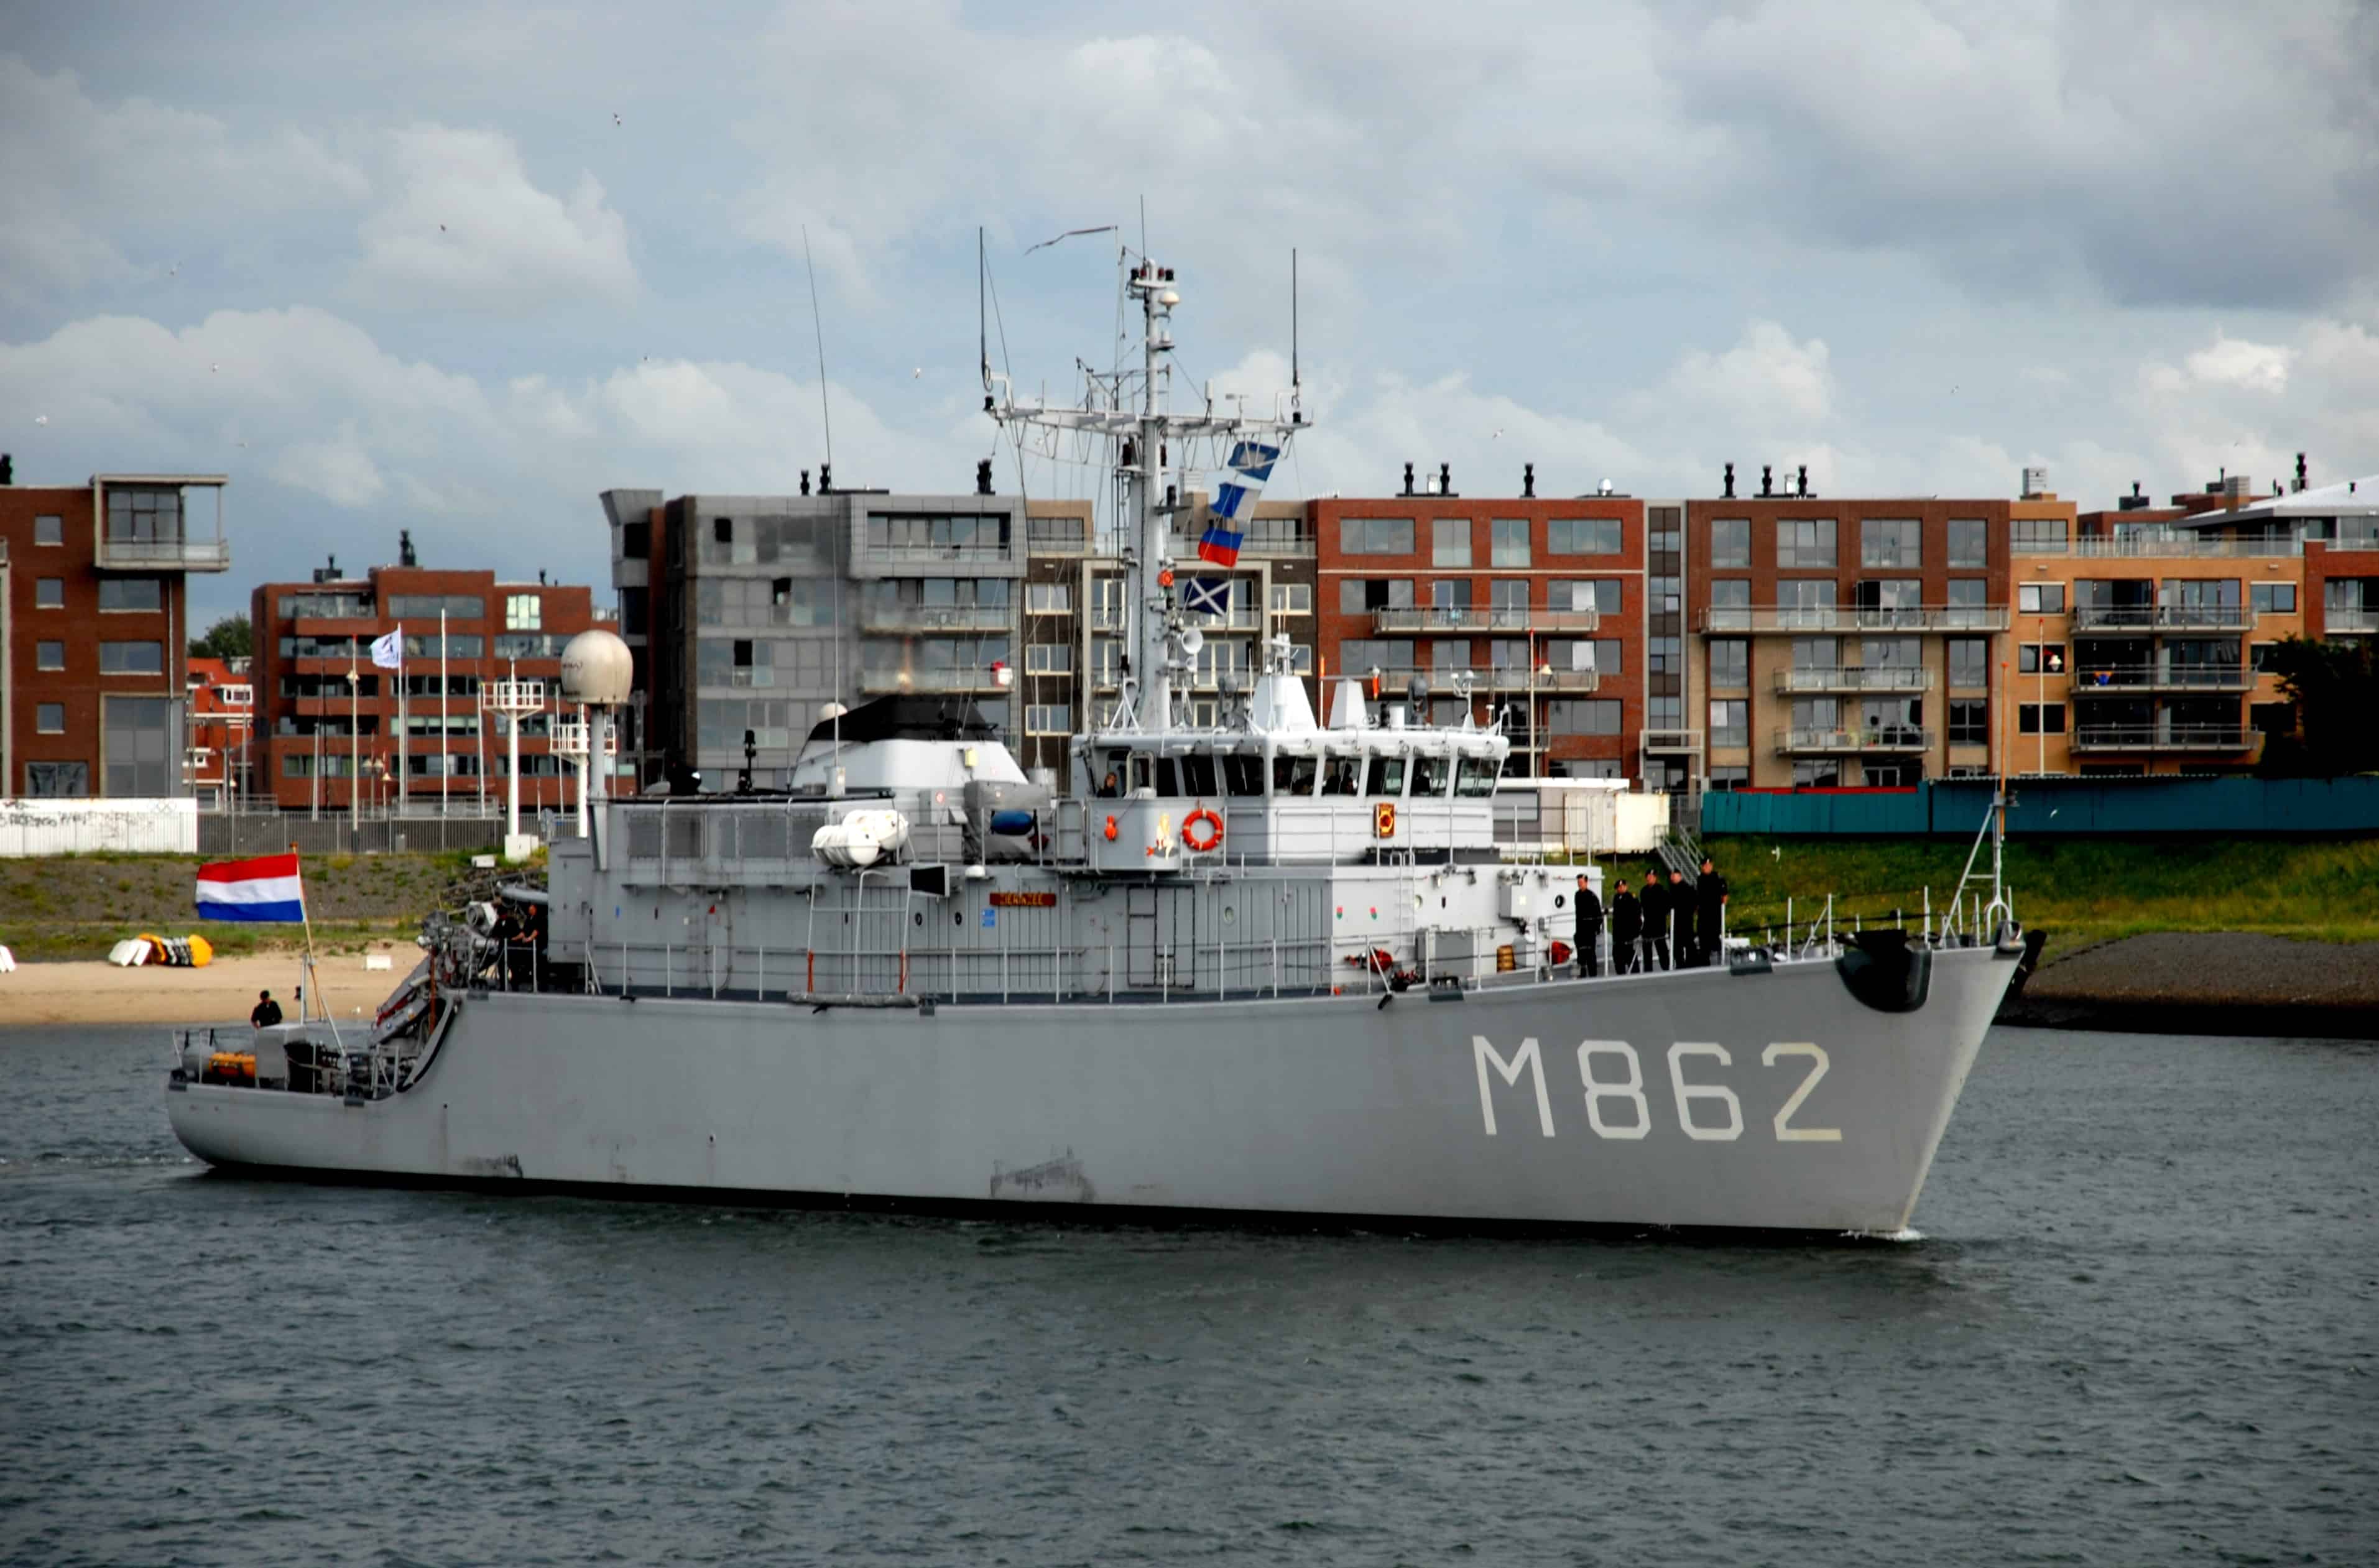 Мінний тральщик Maasluis (M856) Королівського ВМФ Нідерландів